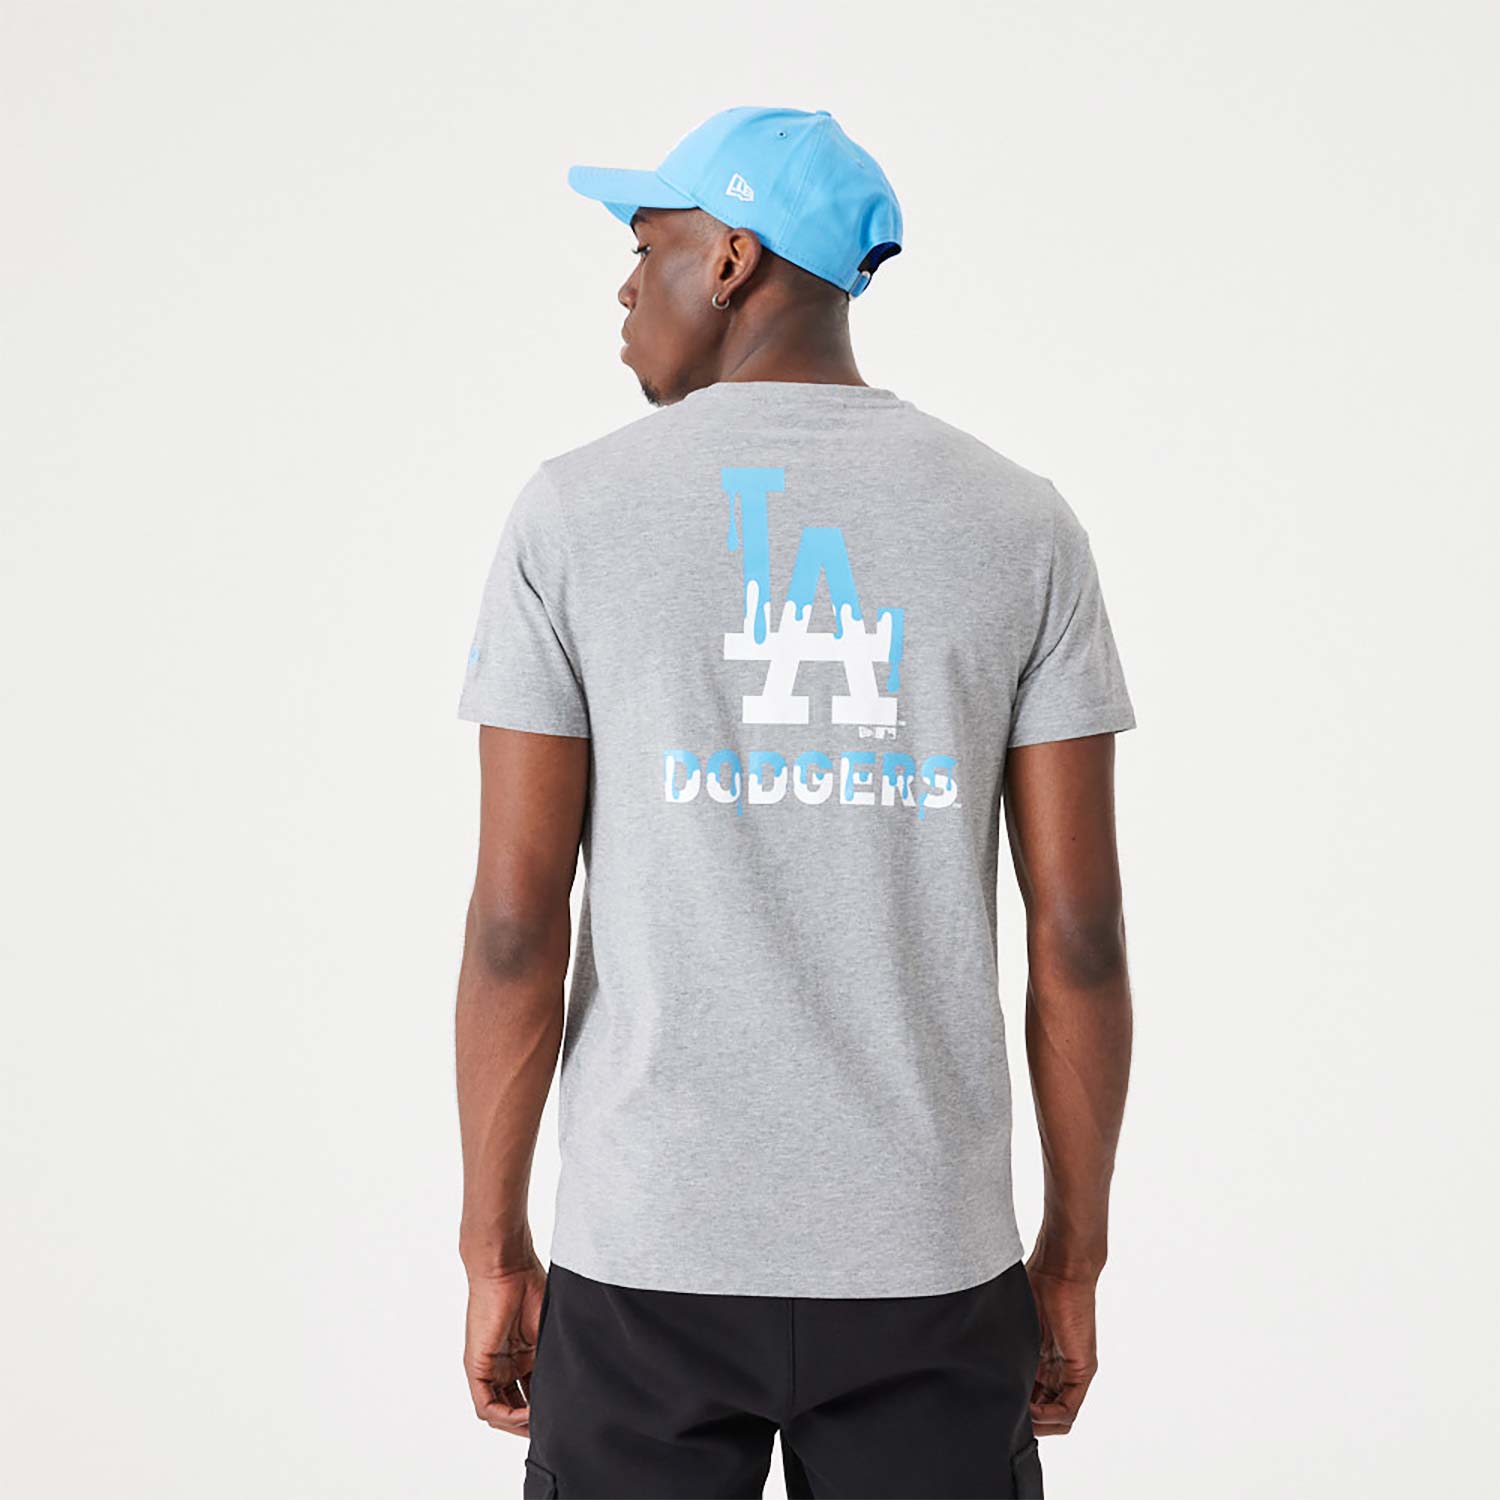 Nike vintage t-shirt LA Dodgers hands logo gray regular fit M ⚾